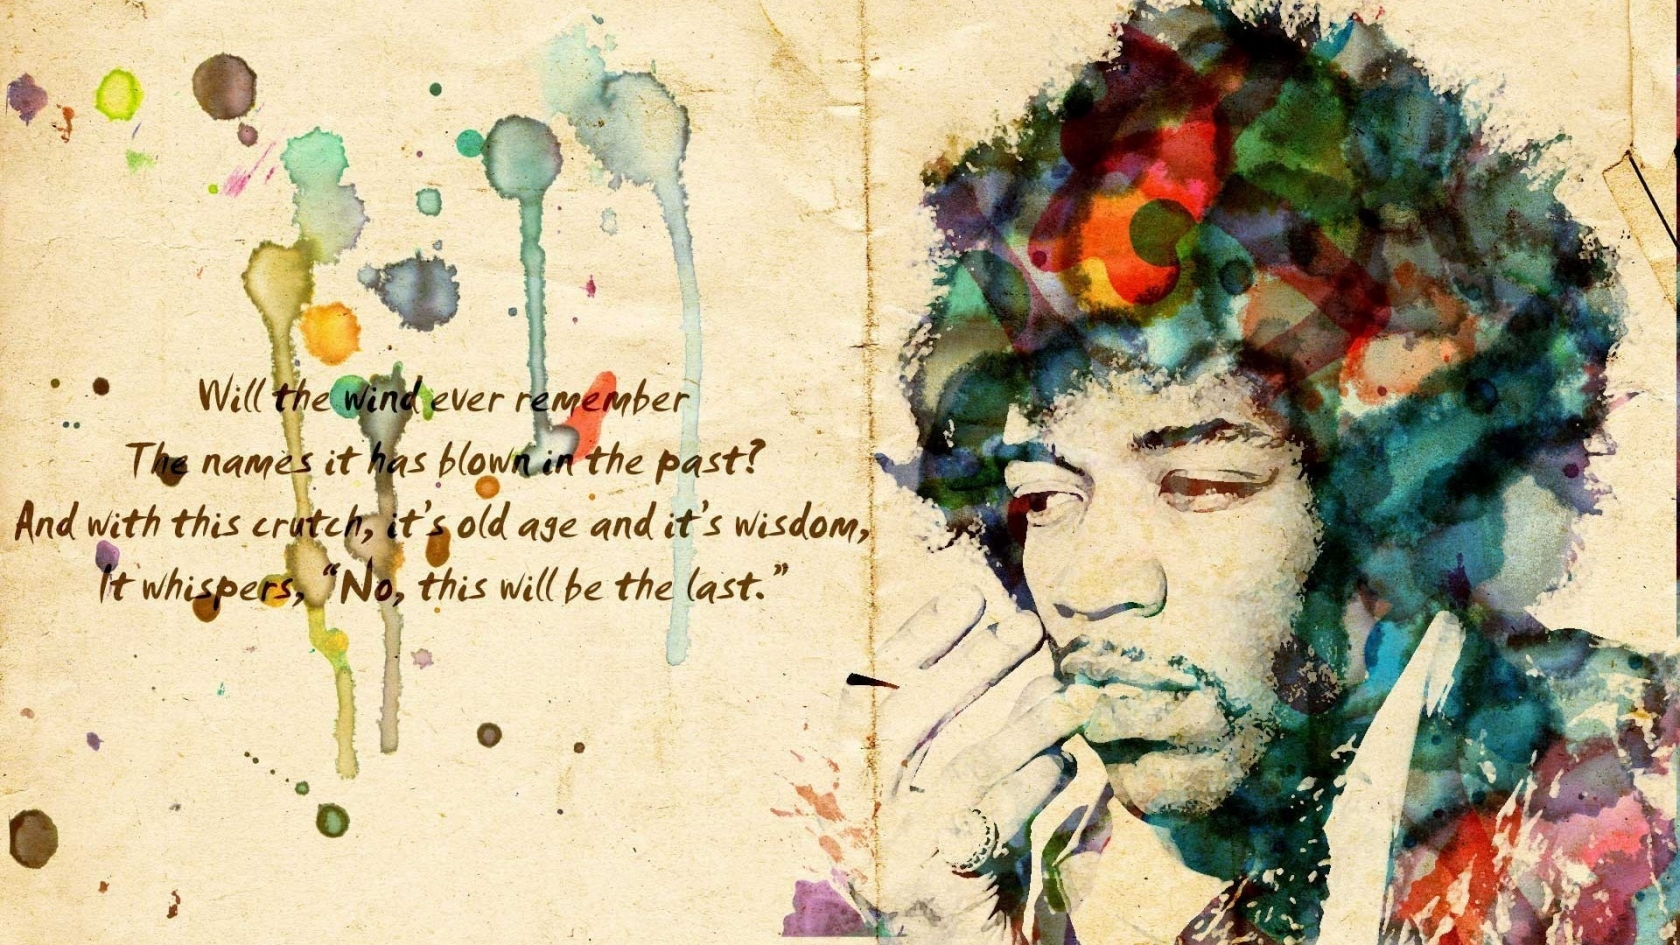 Jimi Hendrix Artwork for 1680 x 945 HDTV resolution